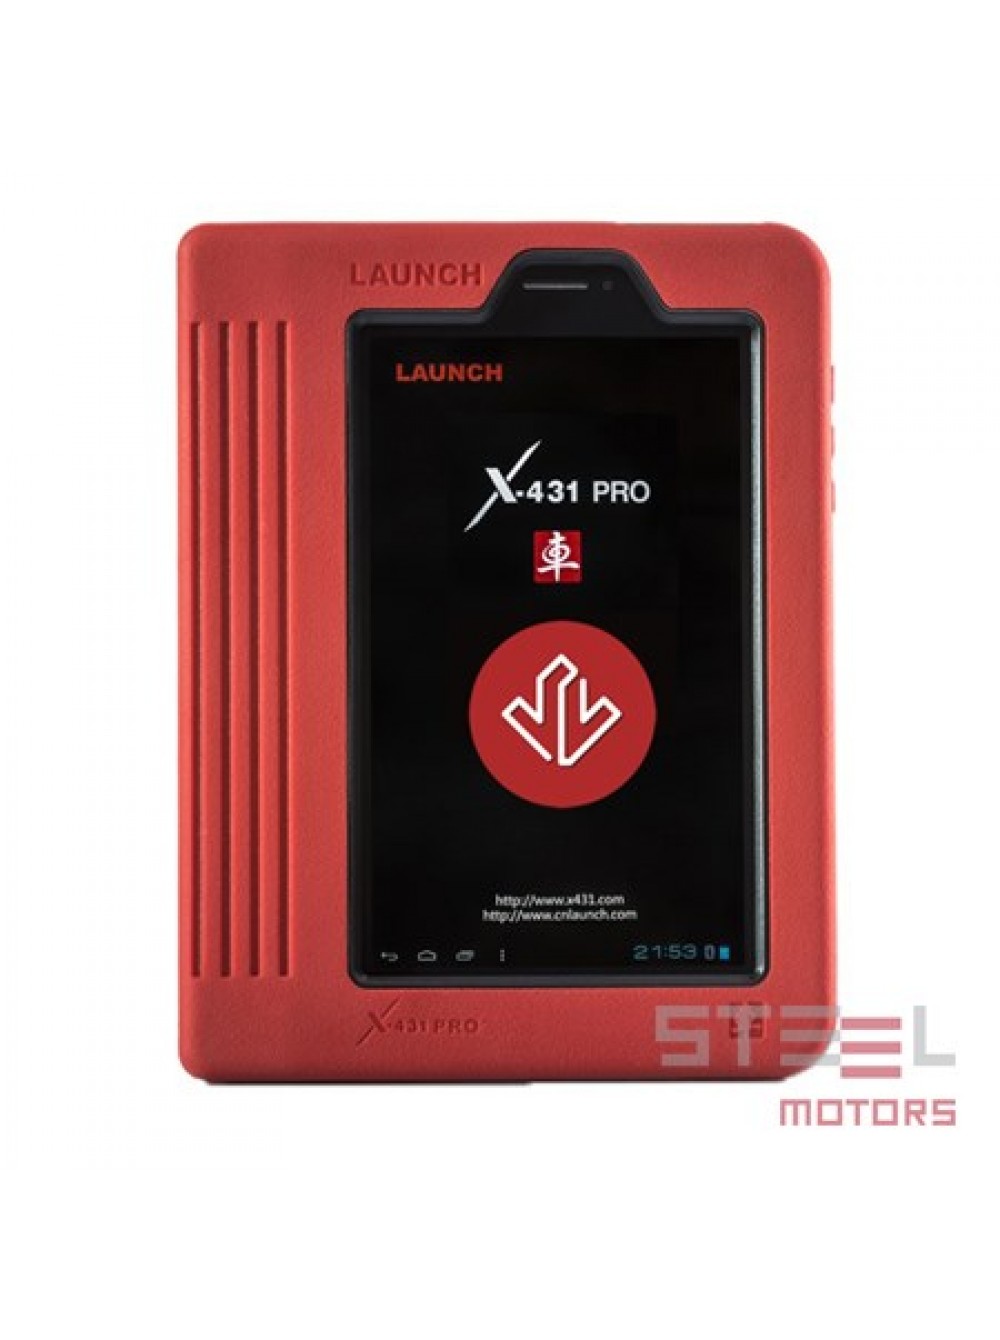 Купить лаунч х431 русская версия. Сканер Launch x431 Pro. Лаунч x431 Pro 2012. Launch x431 Pro мультимарочный сканер. Лаунч x431 v возможности.